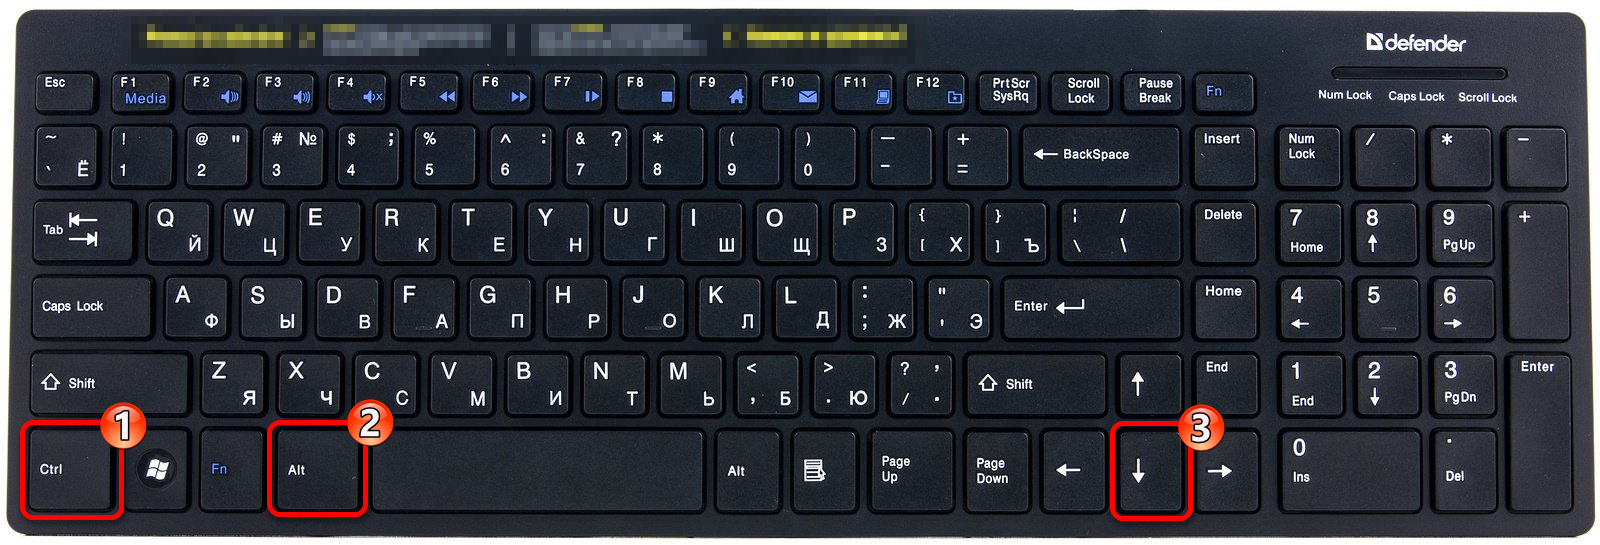 Сочетание клавиш для поворота ориентации экрана вниз в Виндовс 10